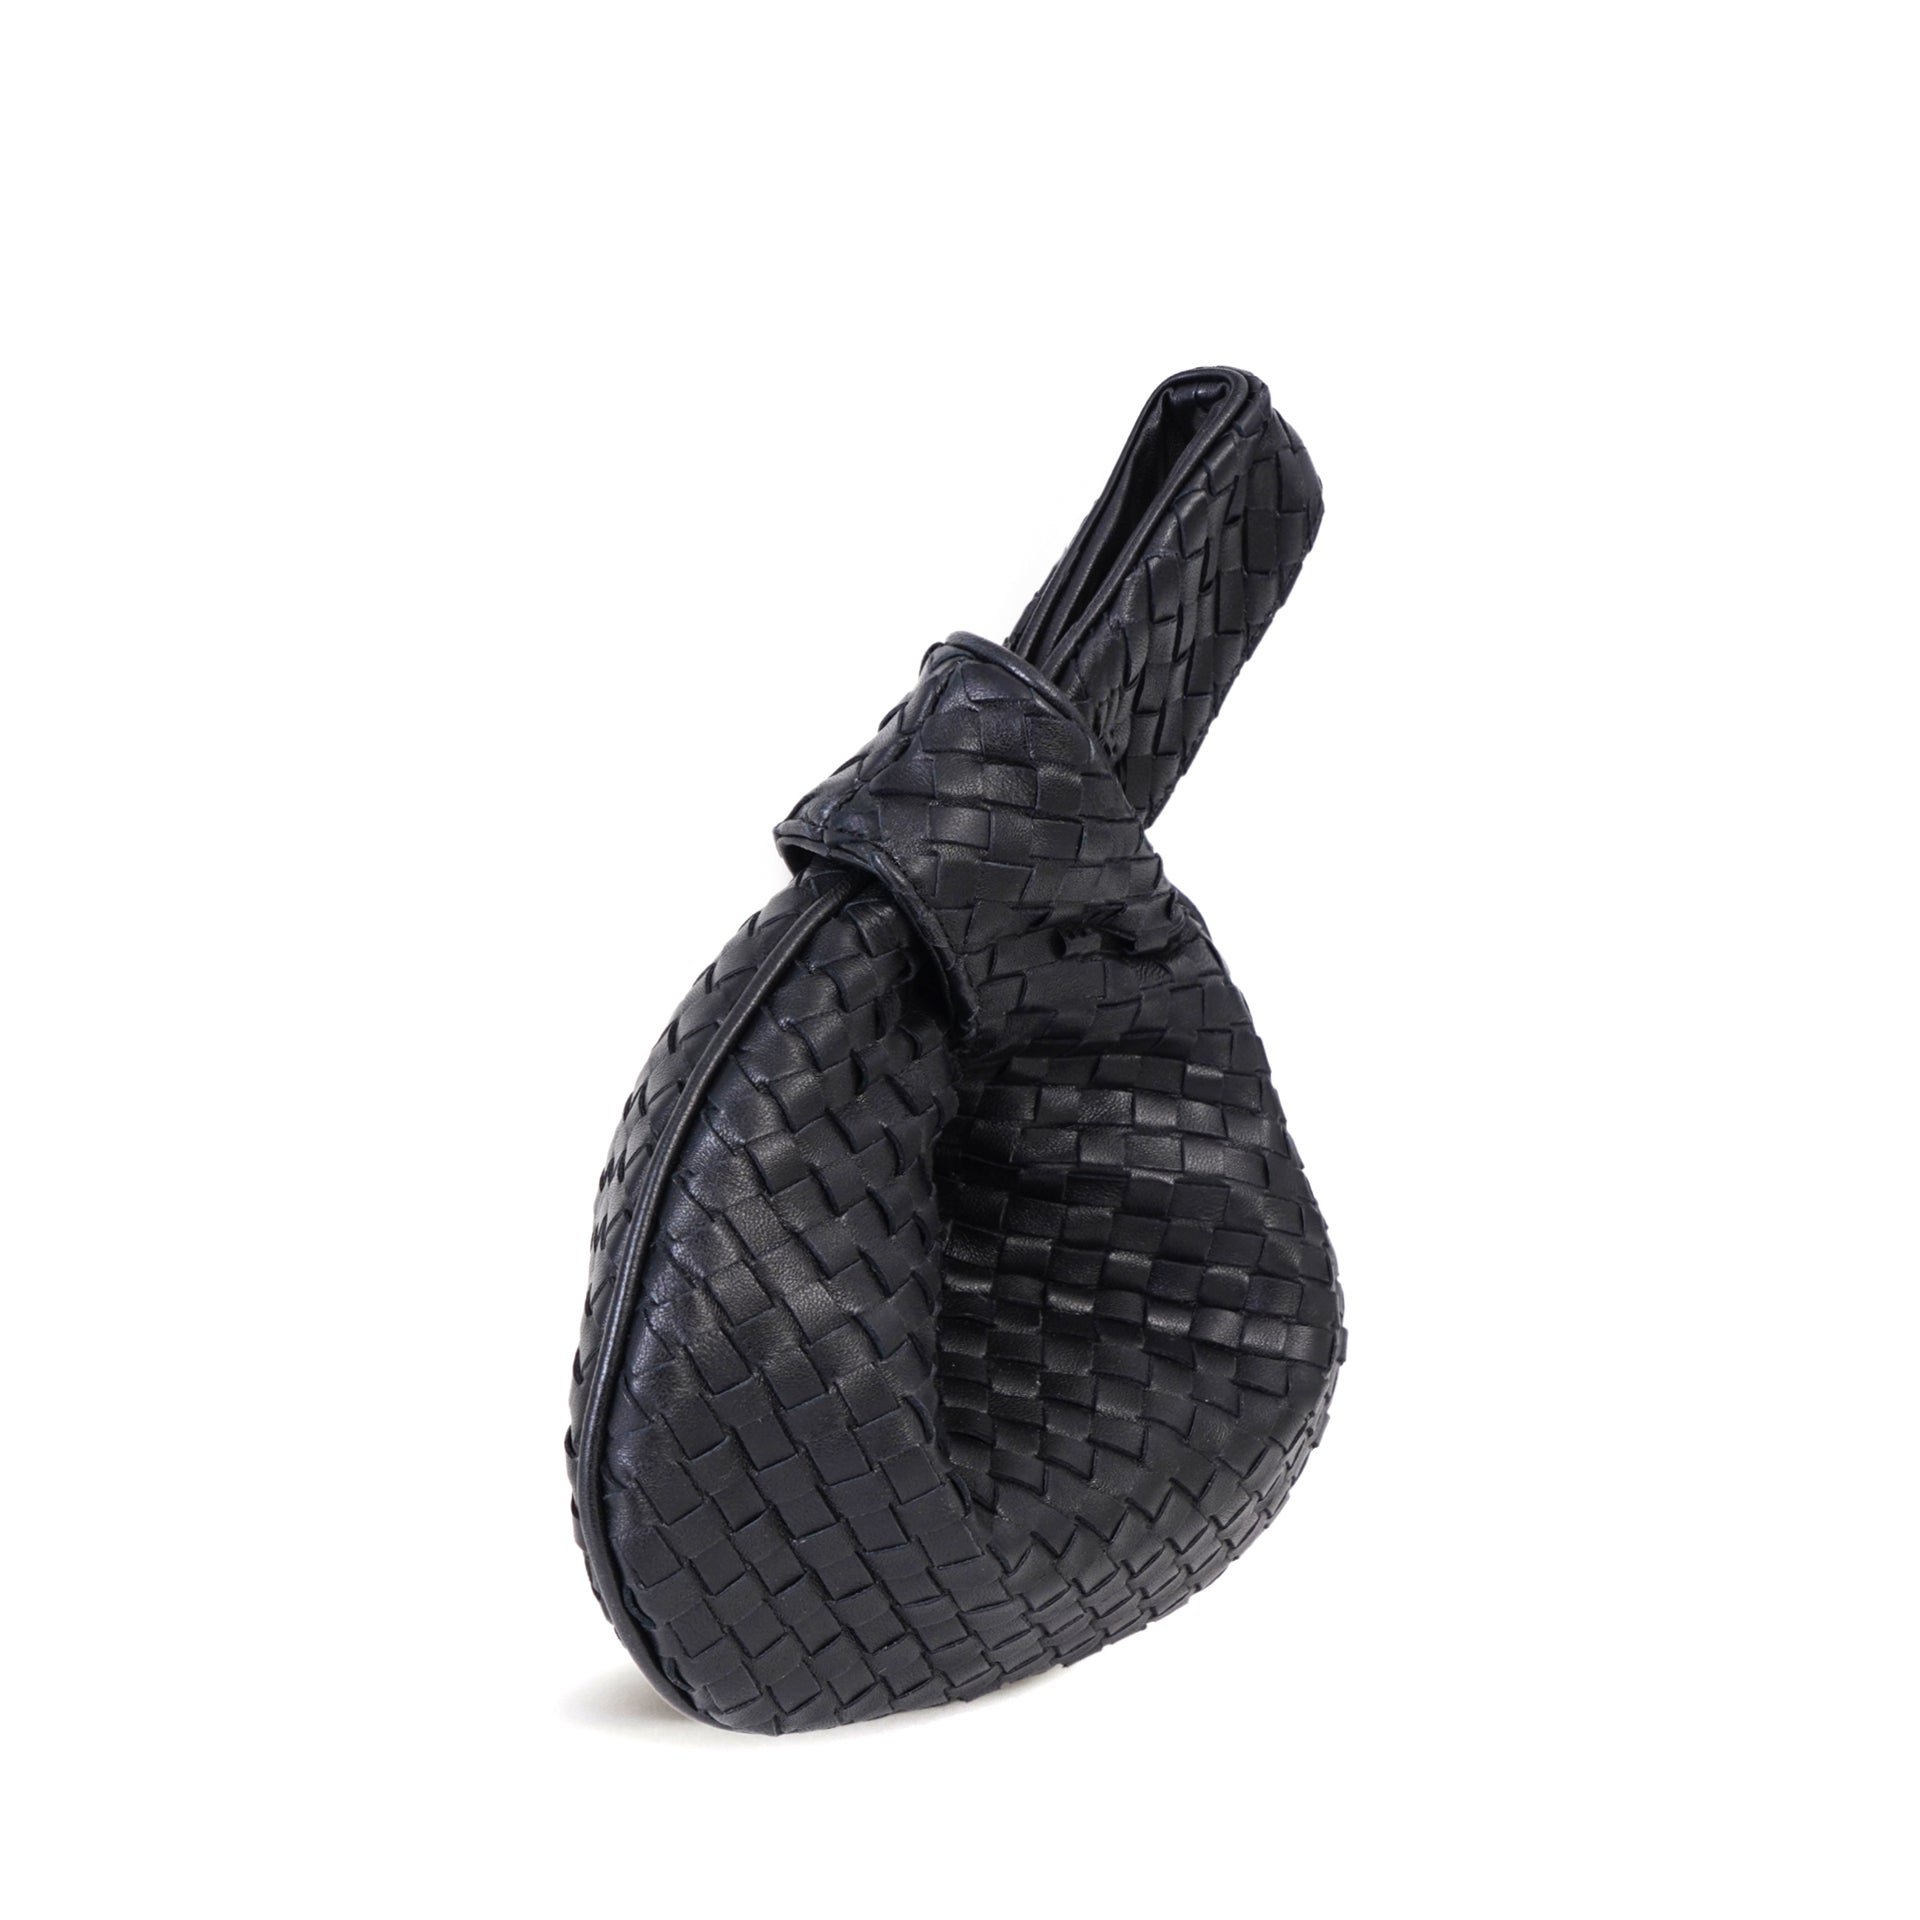 The Rebecca Mini Woven Bag, Italian Woven Leather Purse - MILANER